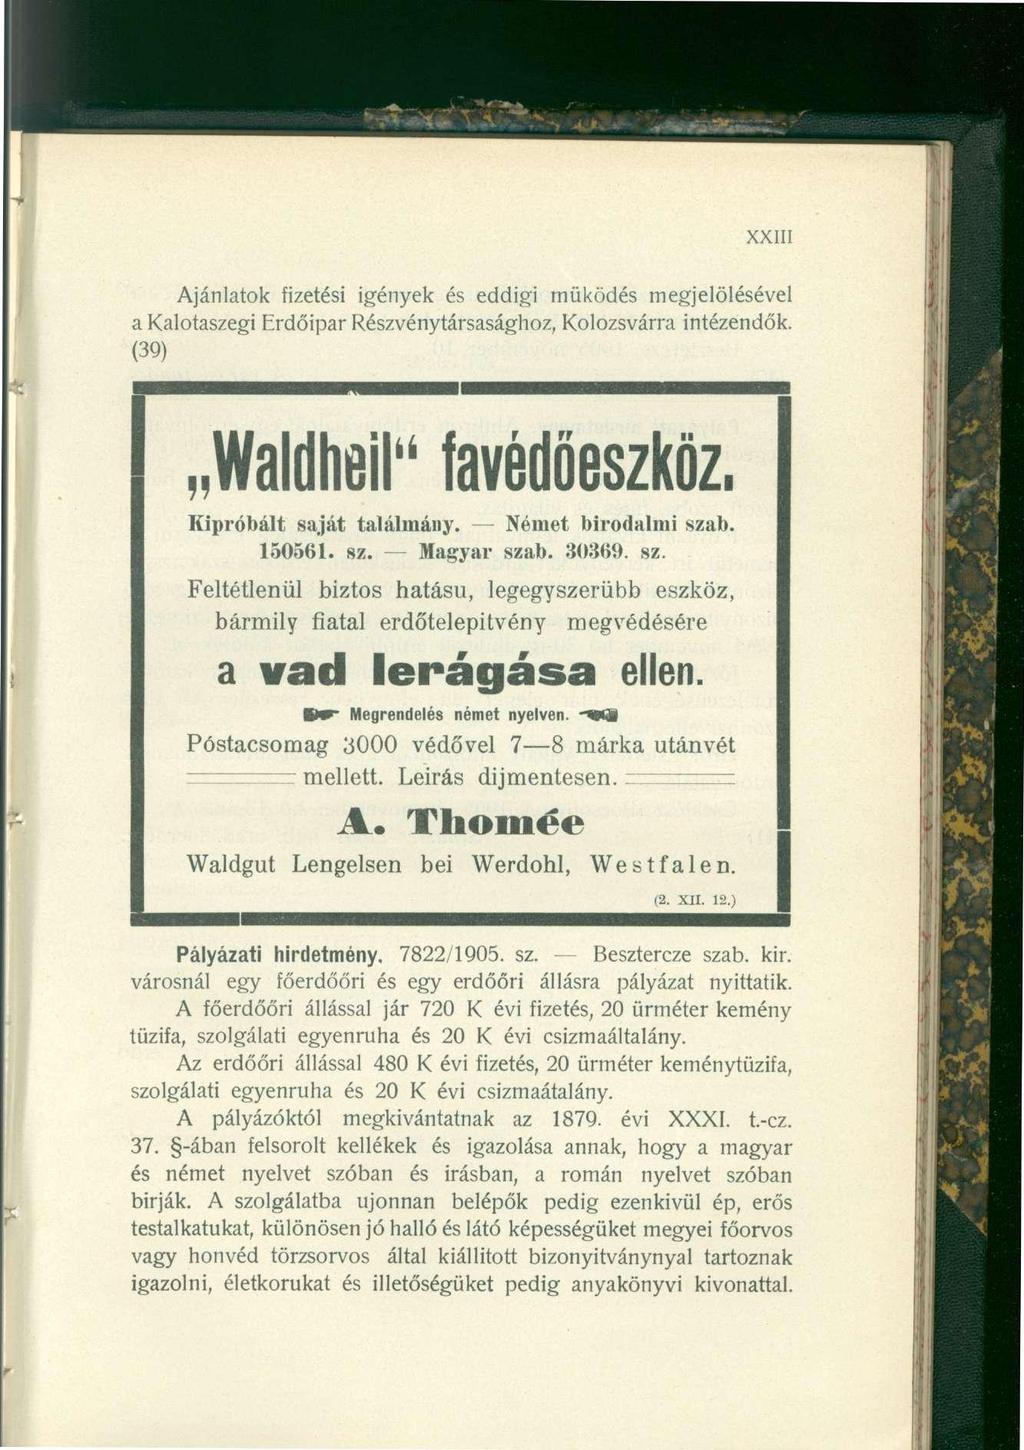 XXIII Ajánlatok fizetési igények és eddigi működés megjelölésével a Kalotaszegi Erdőipar Részvénytársasághoz, Kolozsvárra intézendők. (39) Waldheil" favédőeszköz. Kipróbált saját találmány.